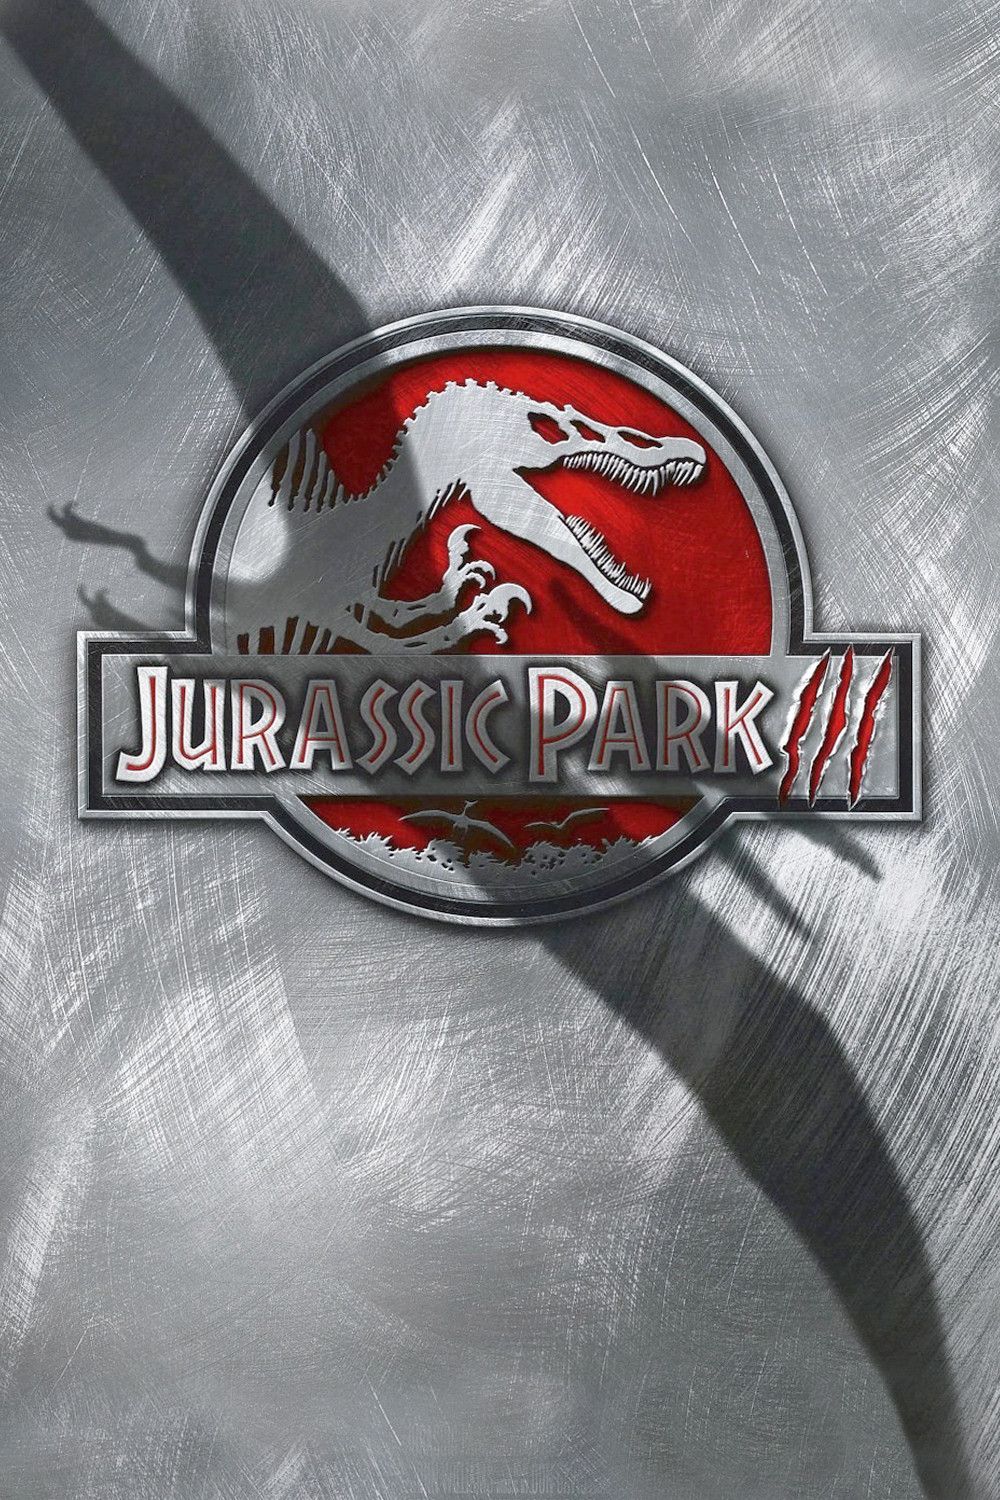 ดูหนังออนไลน์ฟรี Jurassic Park 3 (2001) จูราสสิค ปาร์ค ไดโนเสาร์พันธุ์ดุ 3